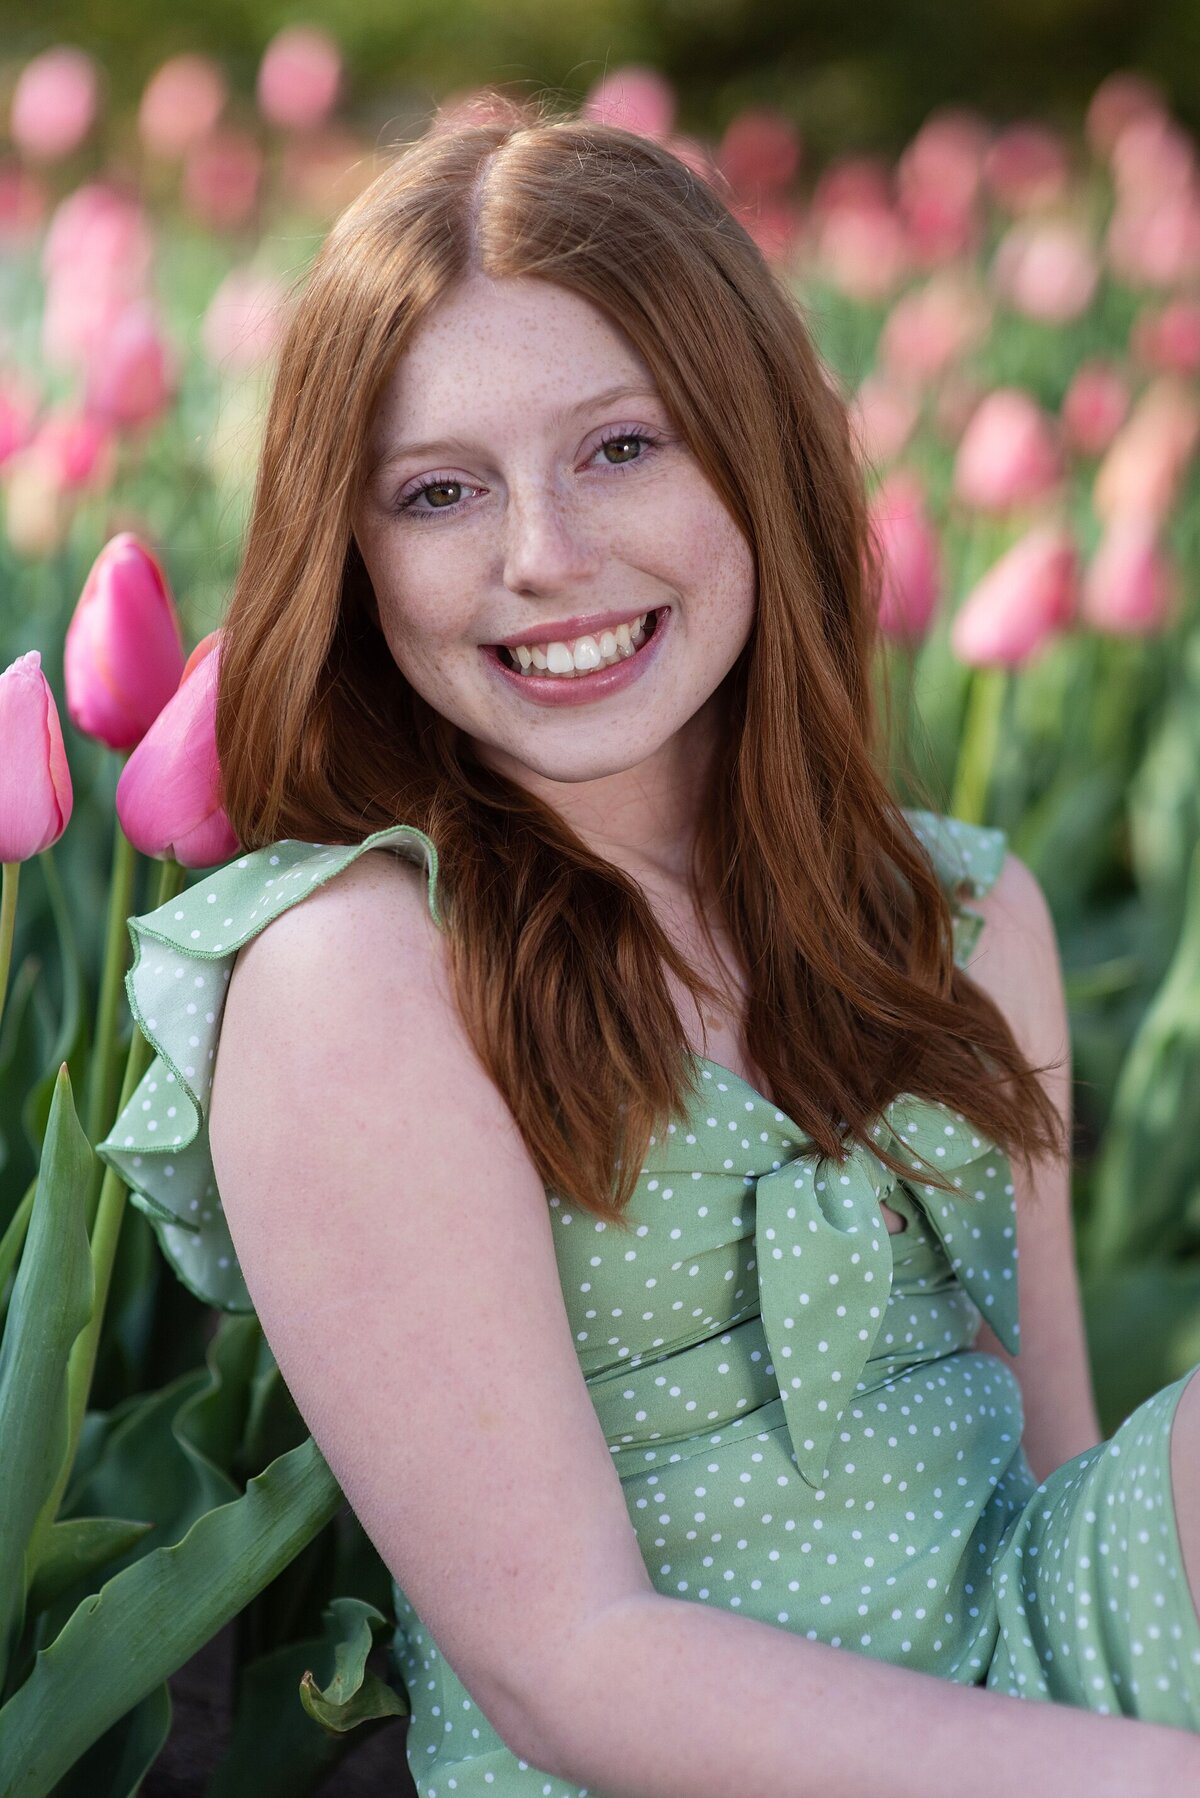 Spring photography session in Wichita, KS girl in tulips